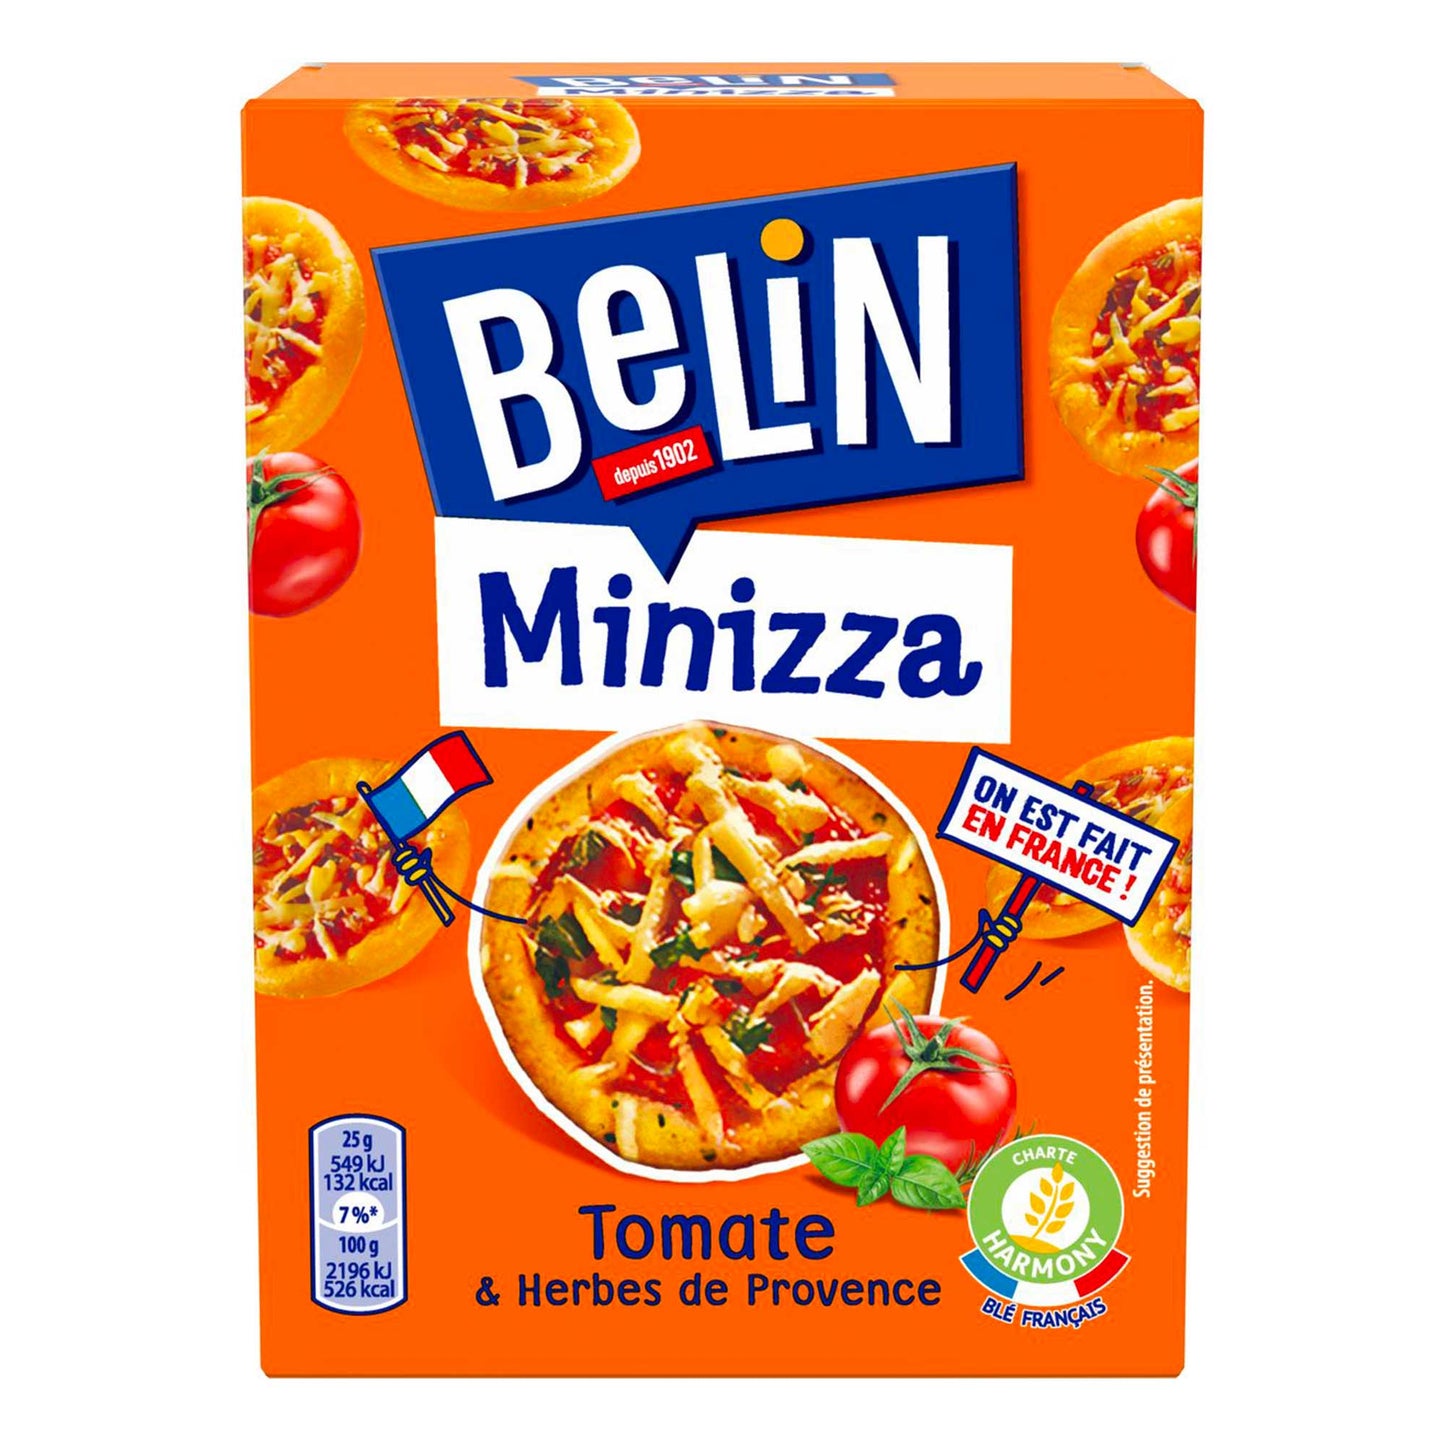 Belin Minizza